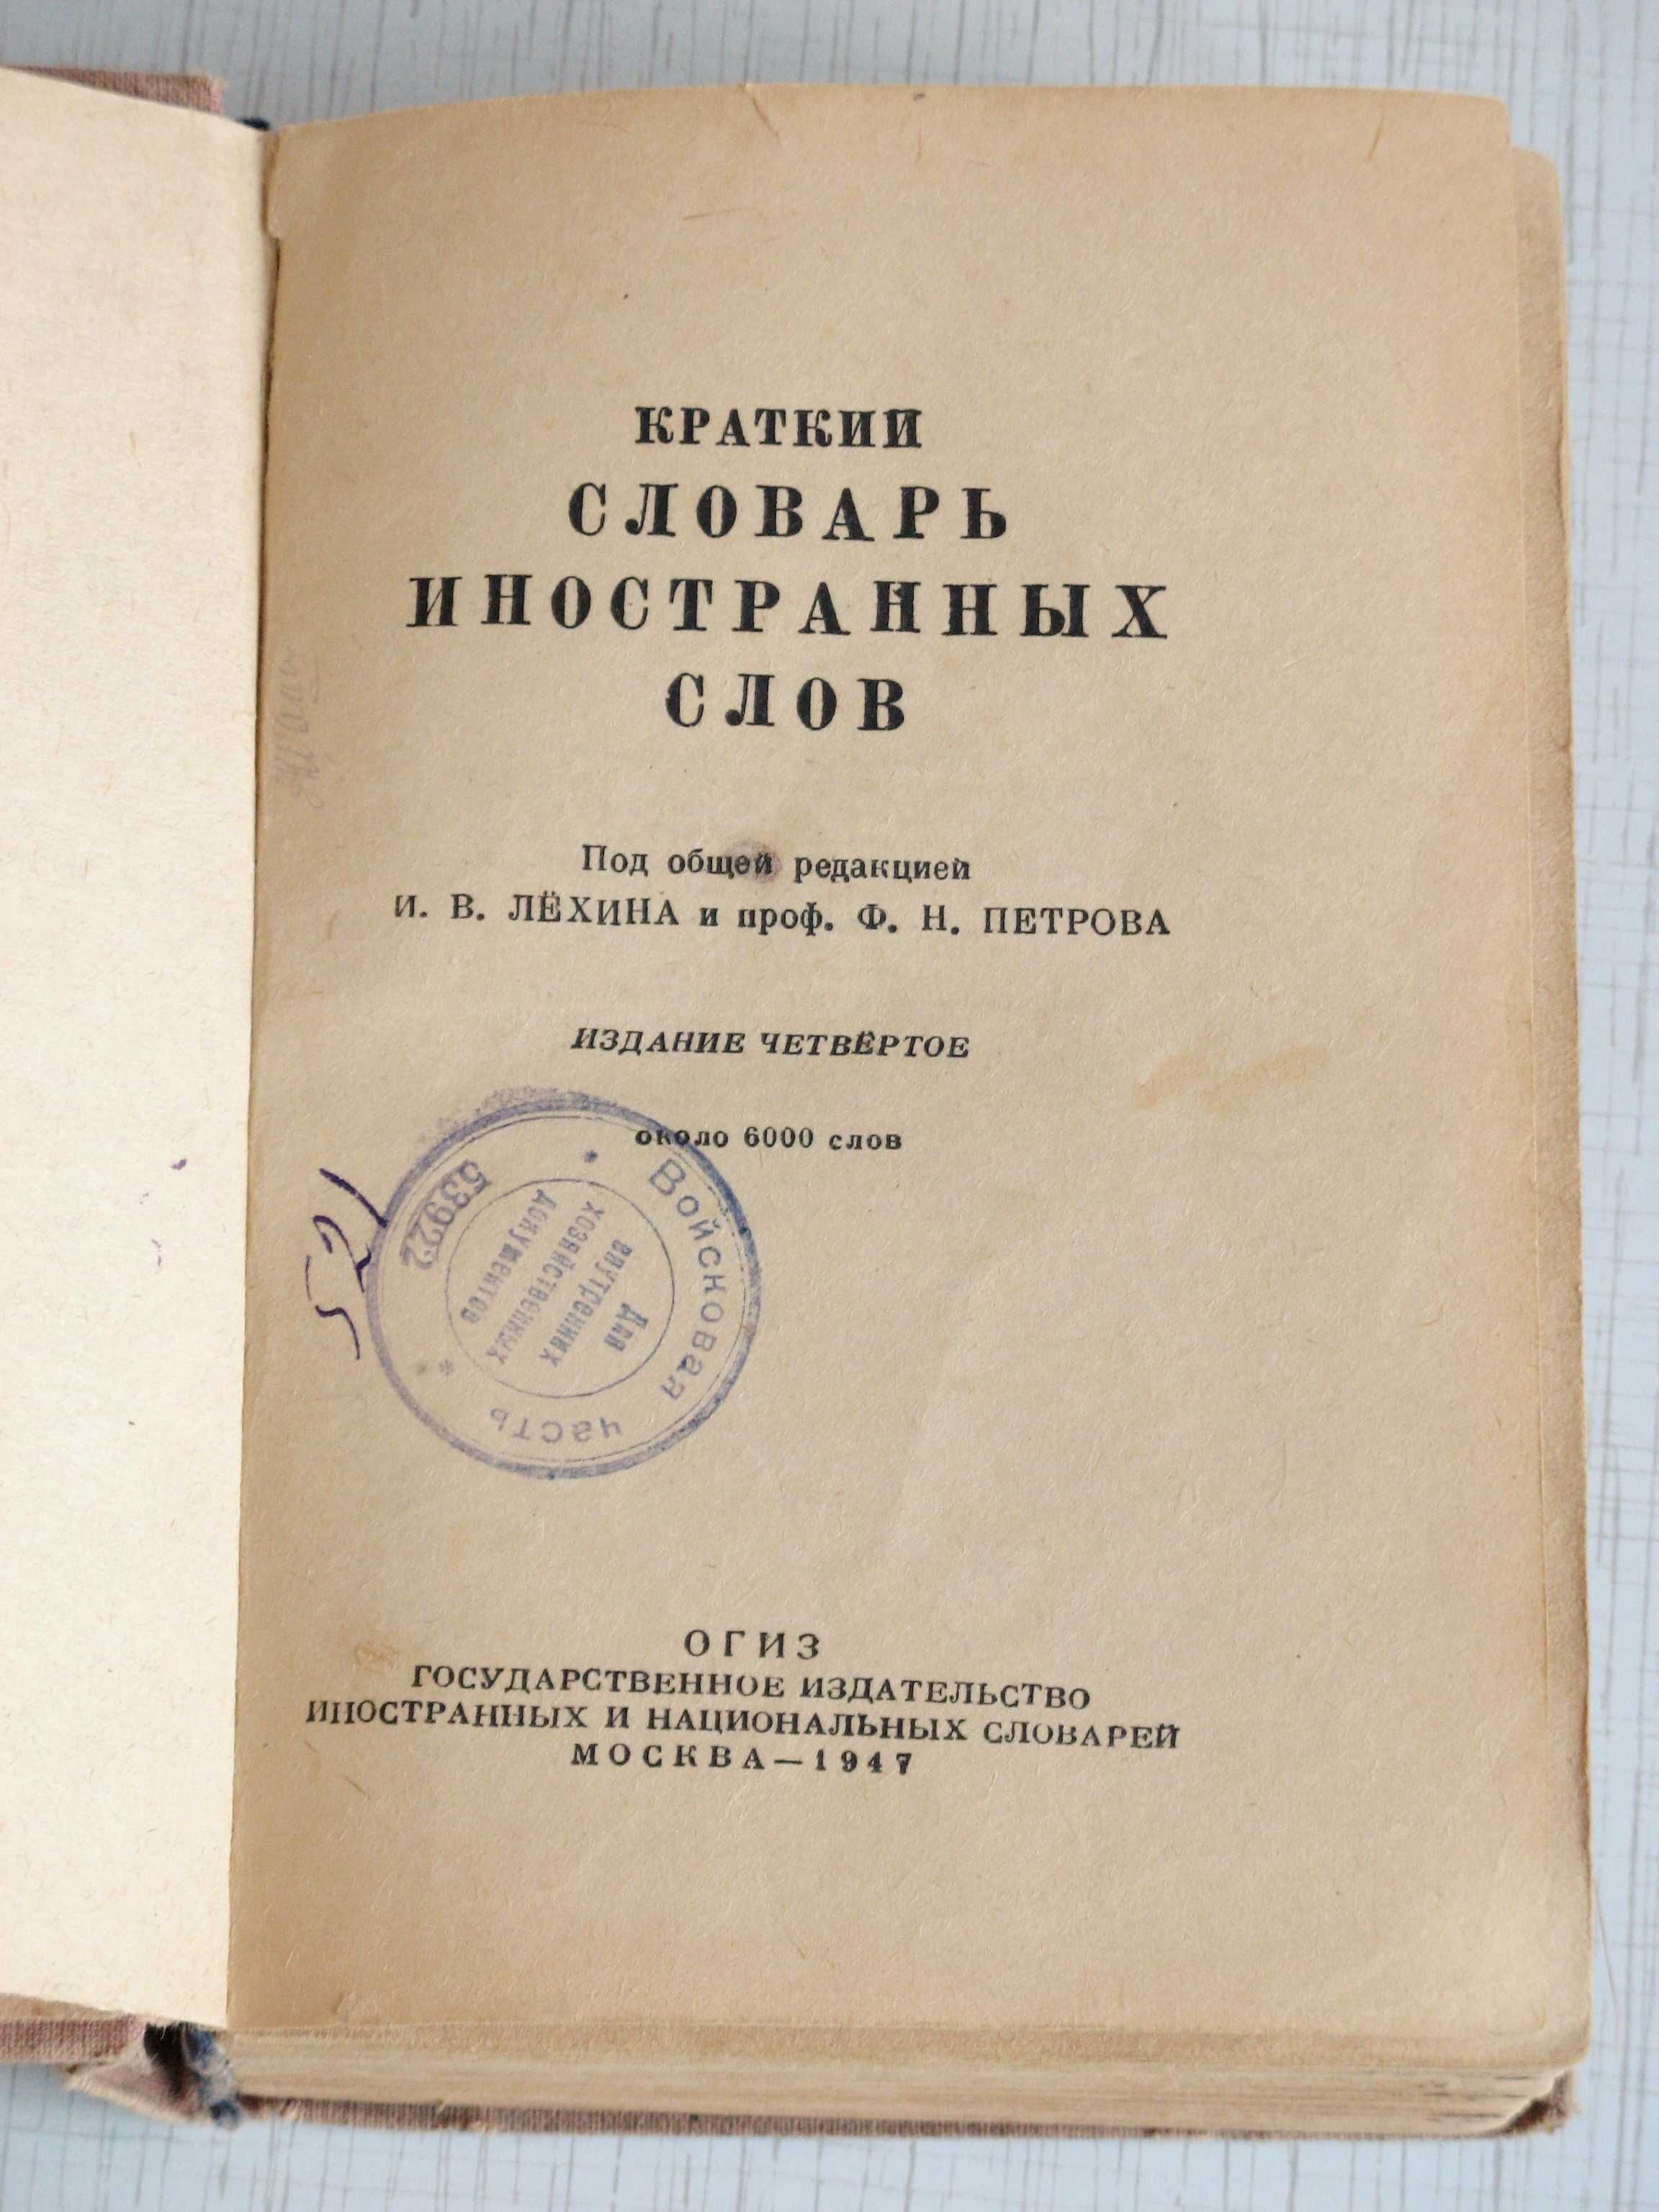 Словарь иностранных слов 1947 г.